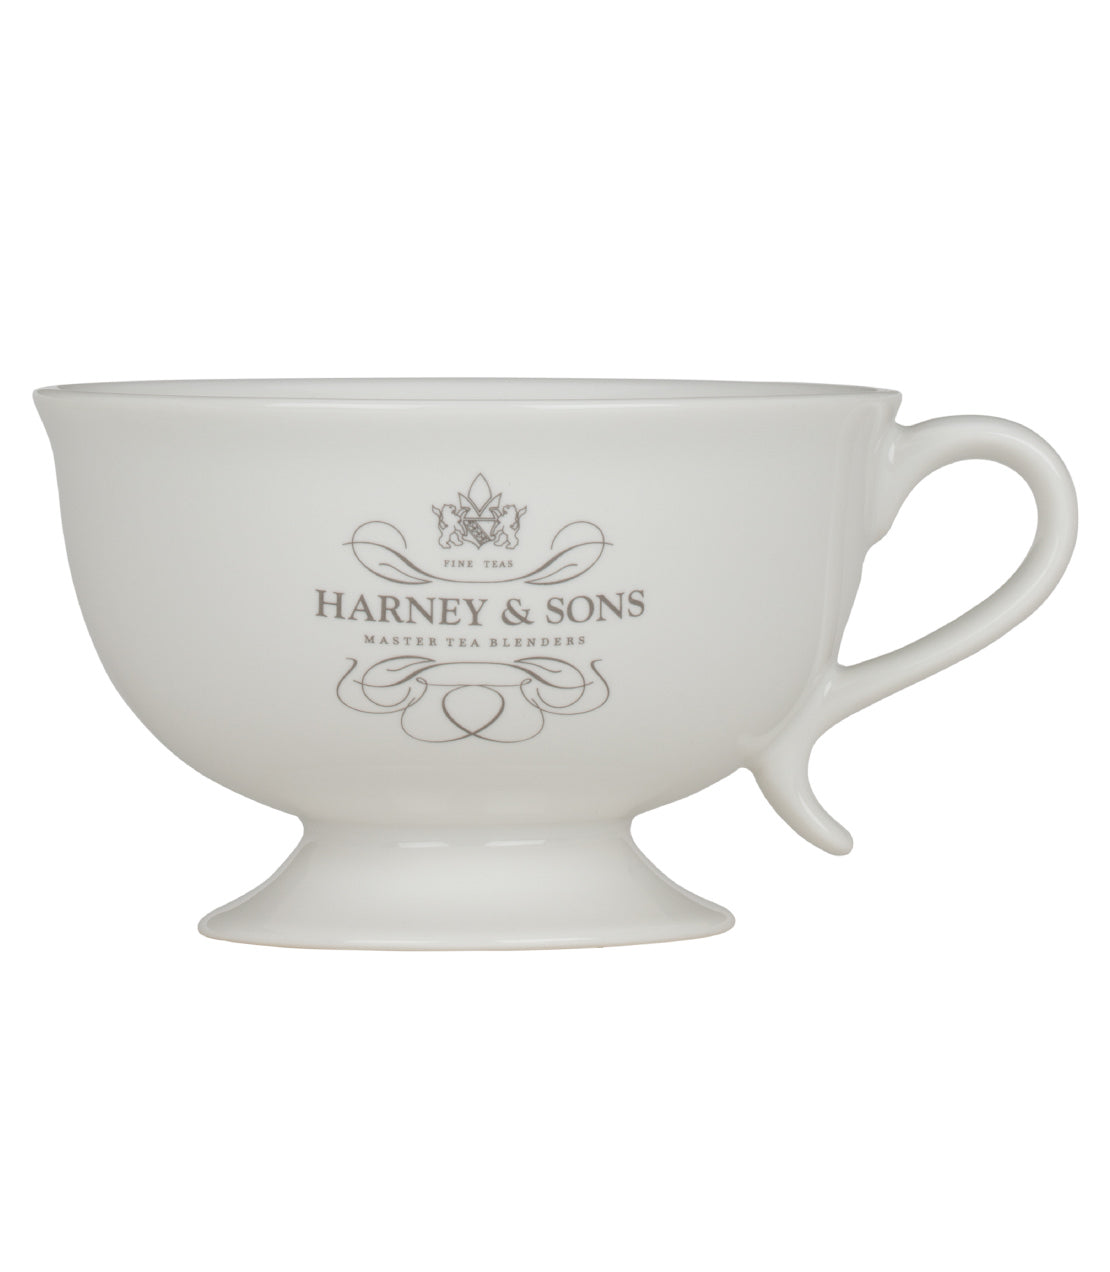 Harney & Sons Teacup - 8 oz.  - Harney & Sons Fine Teas